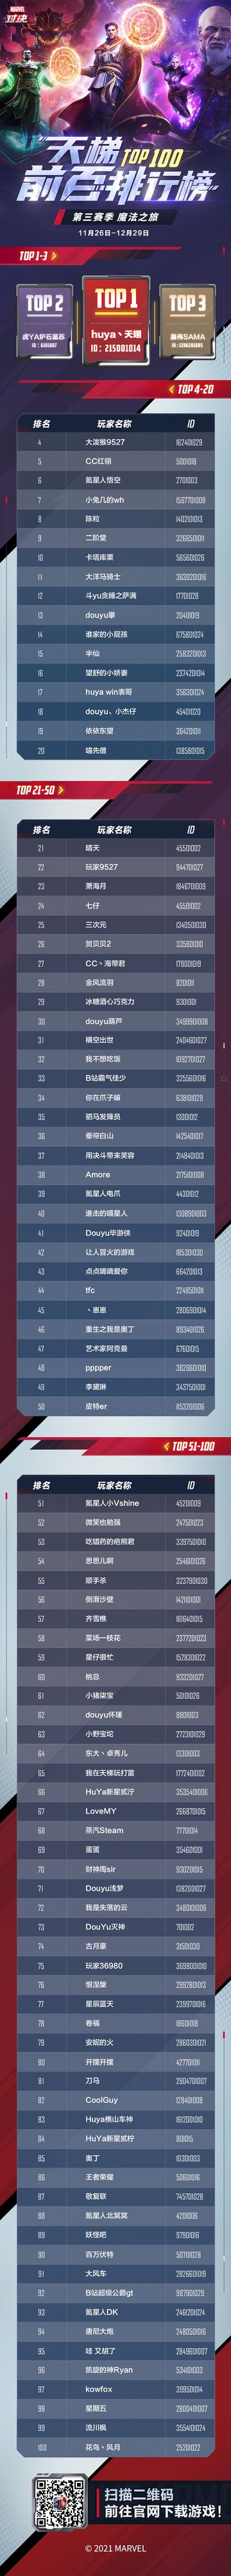 《漫威对决》S3赛季天梯Top100排行榜